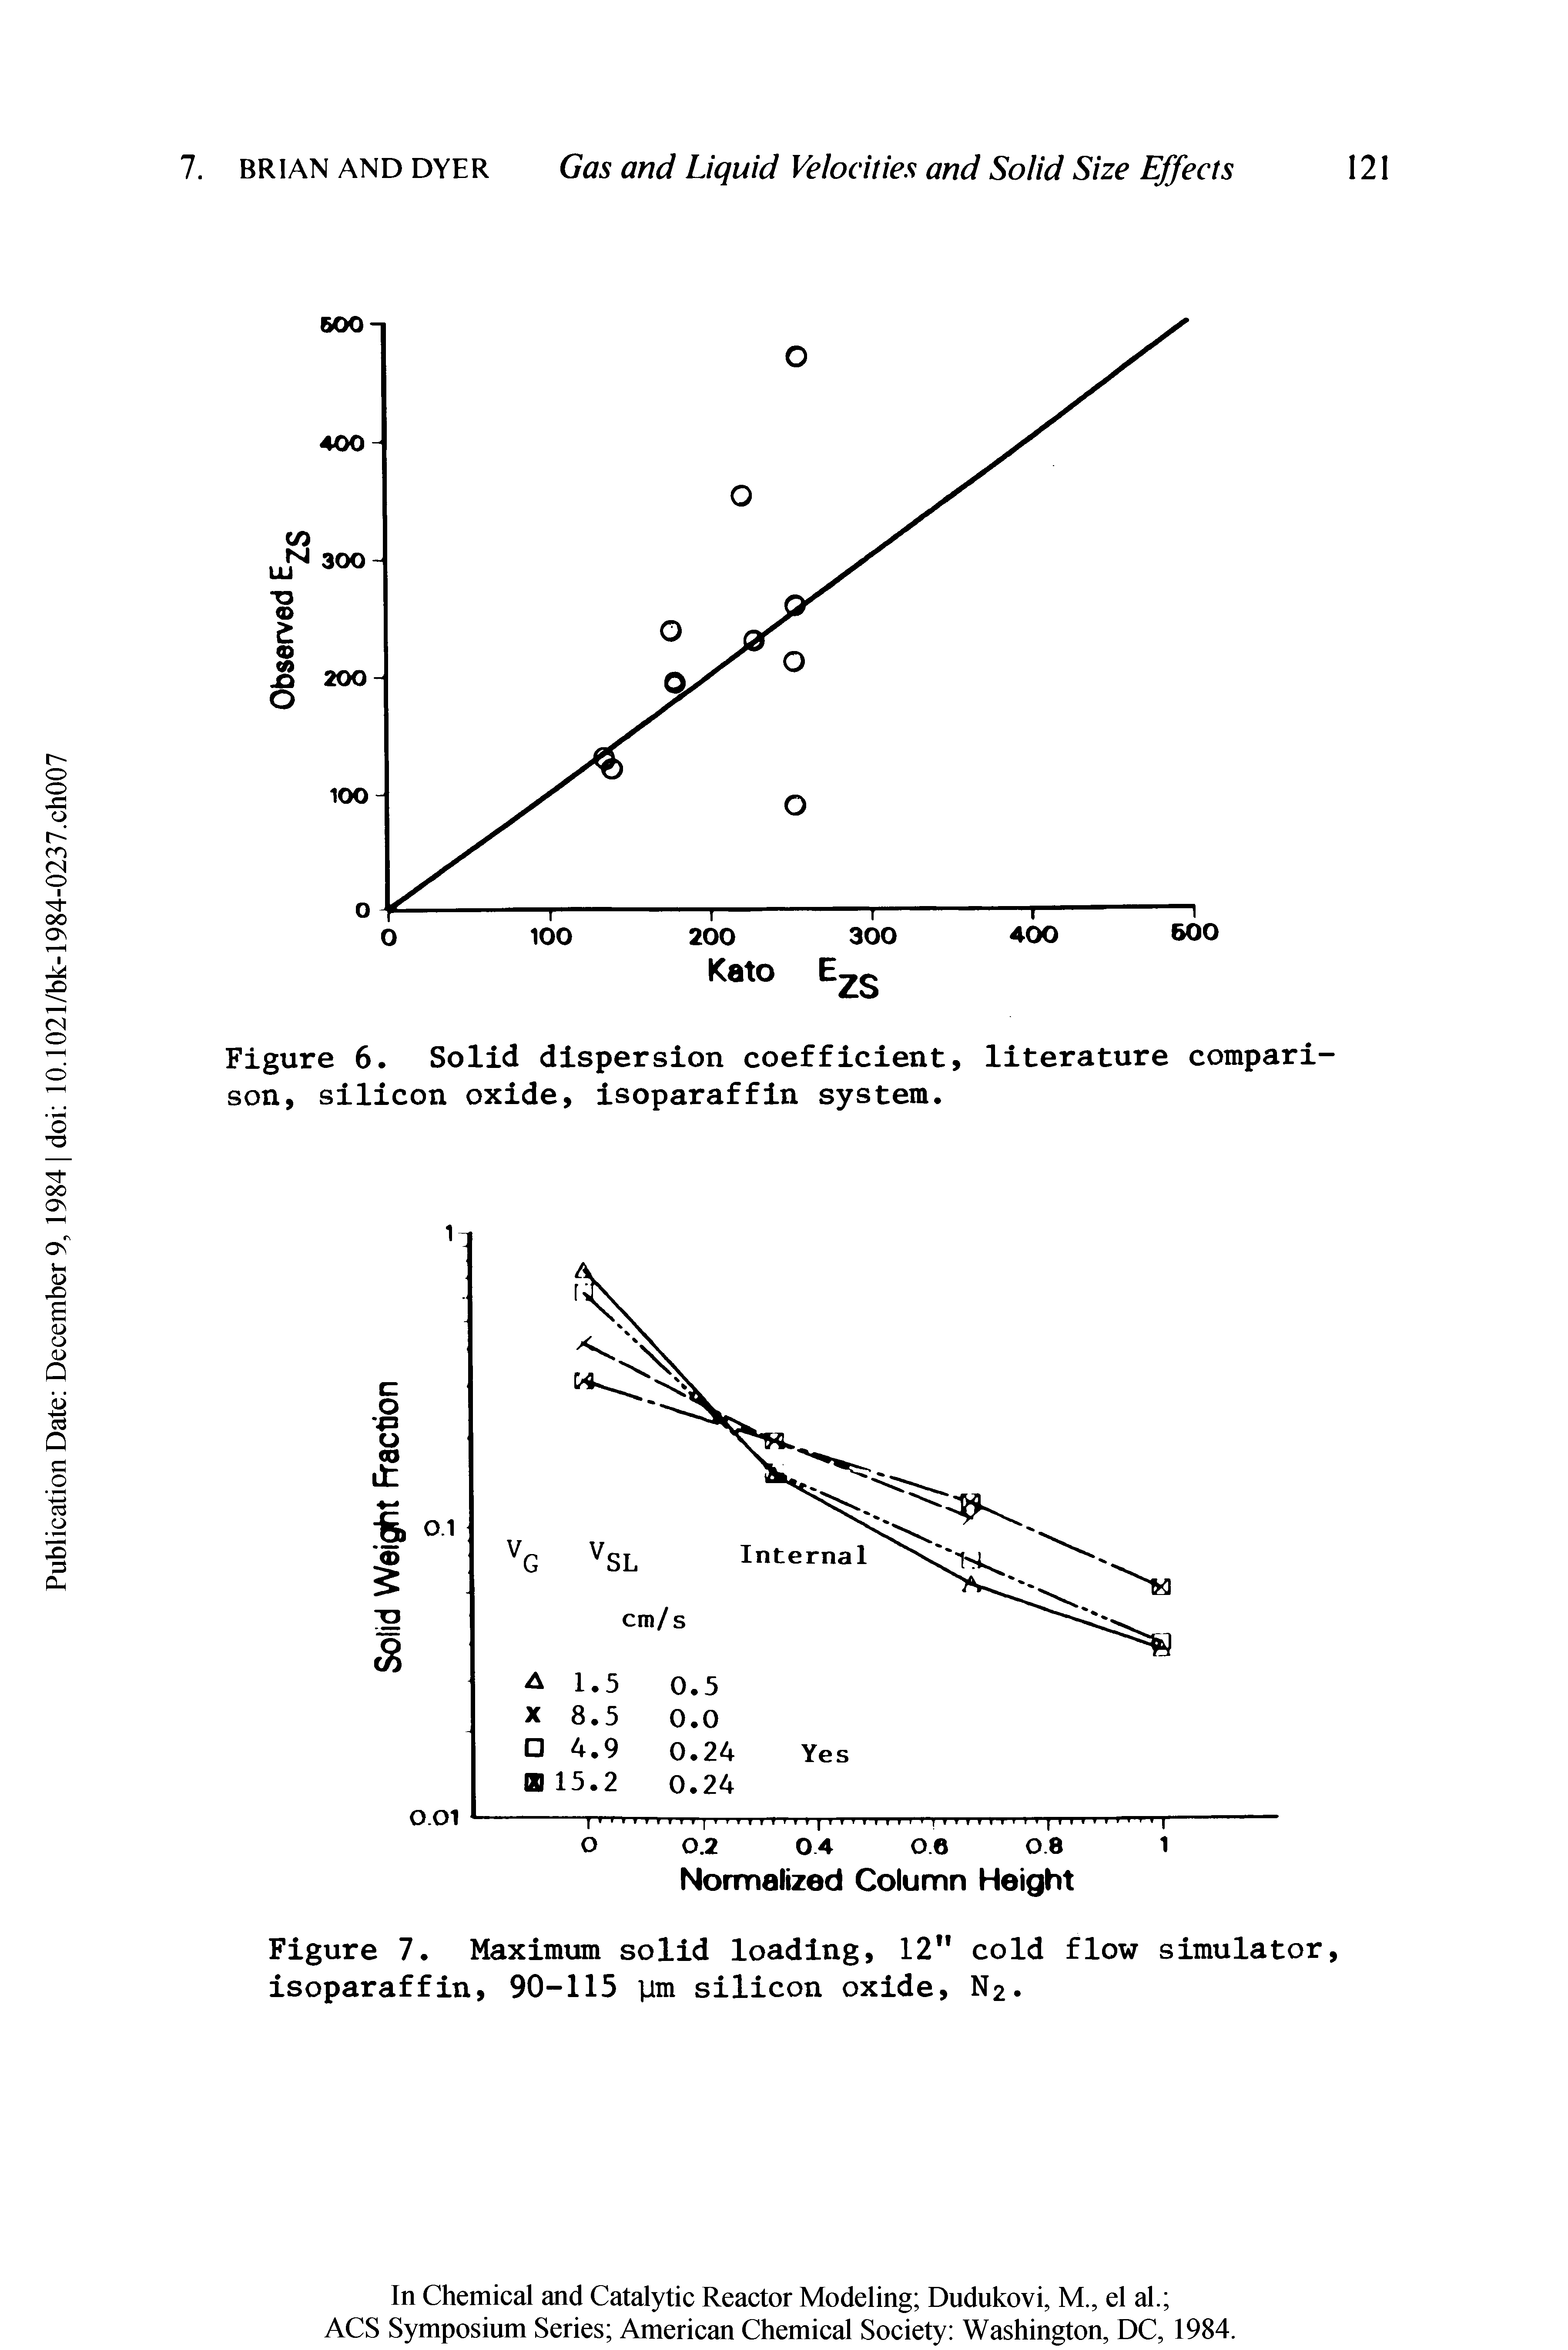 Figure 6. Solid dispersion coefficient, literature comparison, silicon oxide, isoparaffin system.